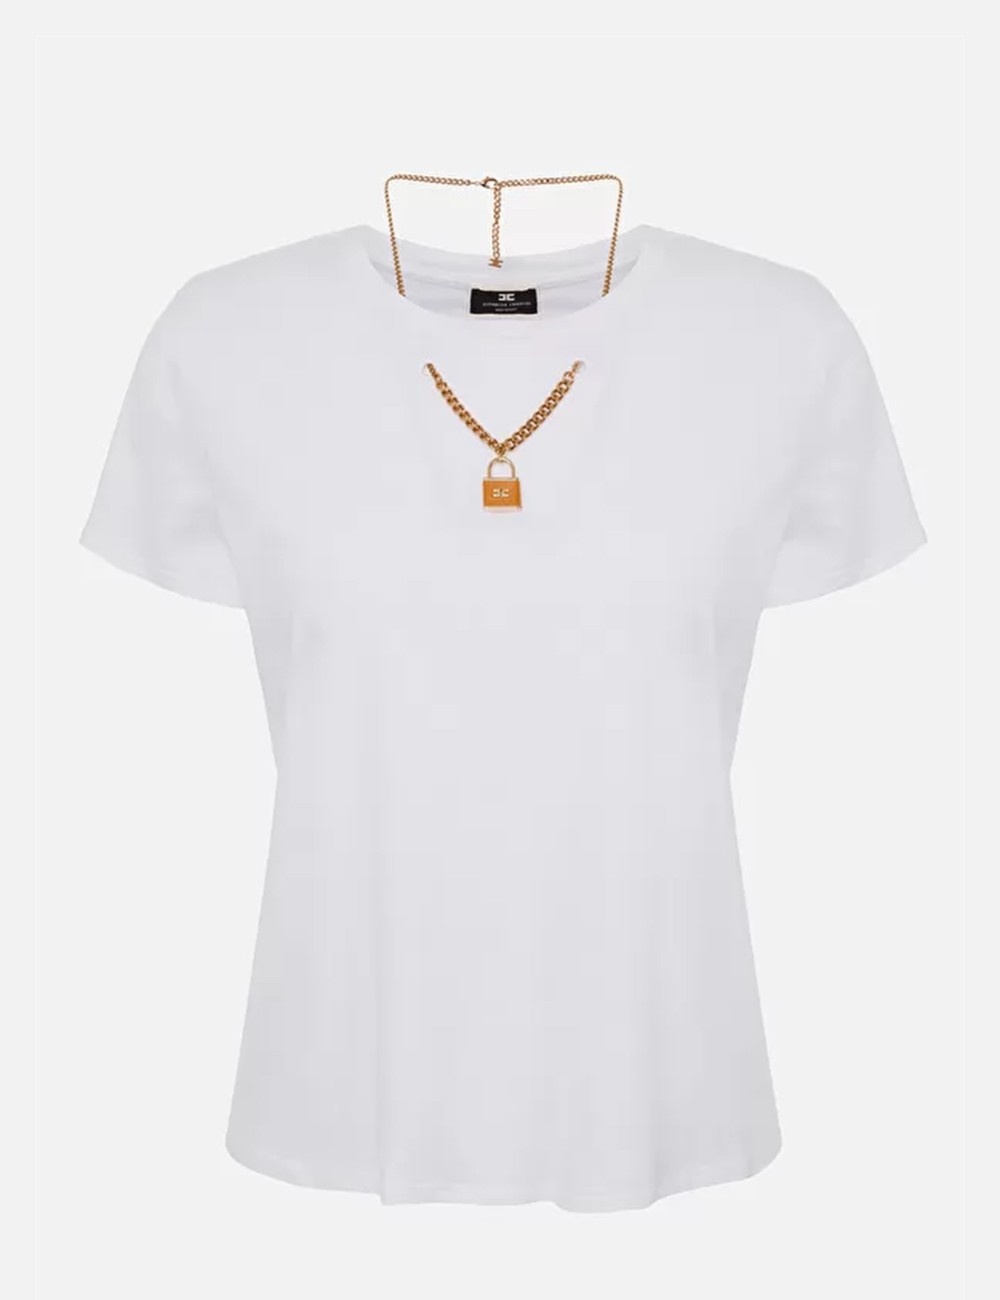 T-shirt girocollo con collana doppia catena Gesso